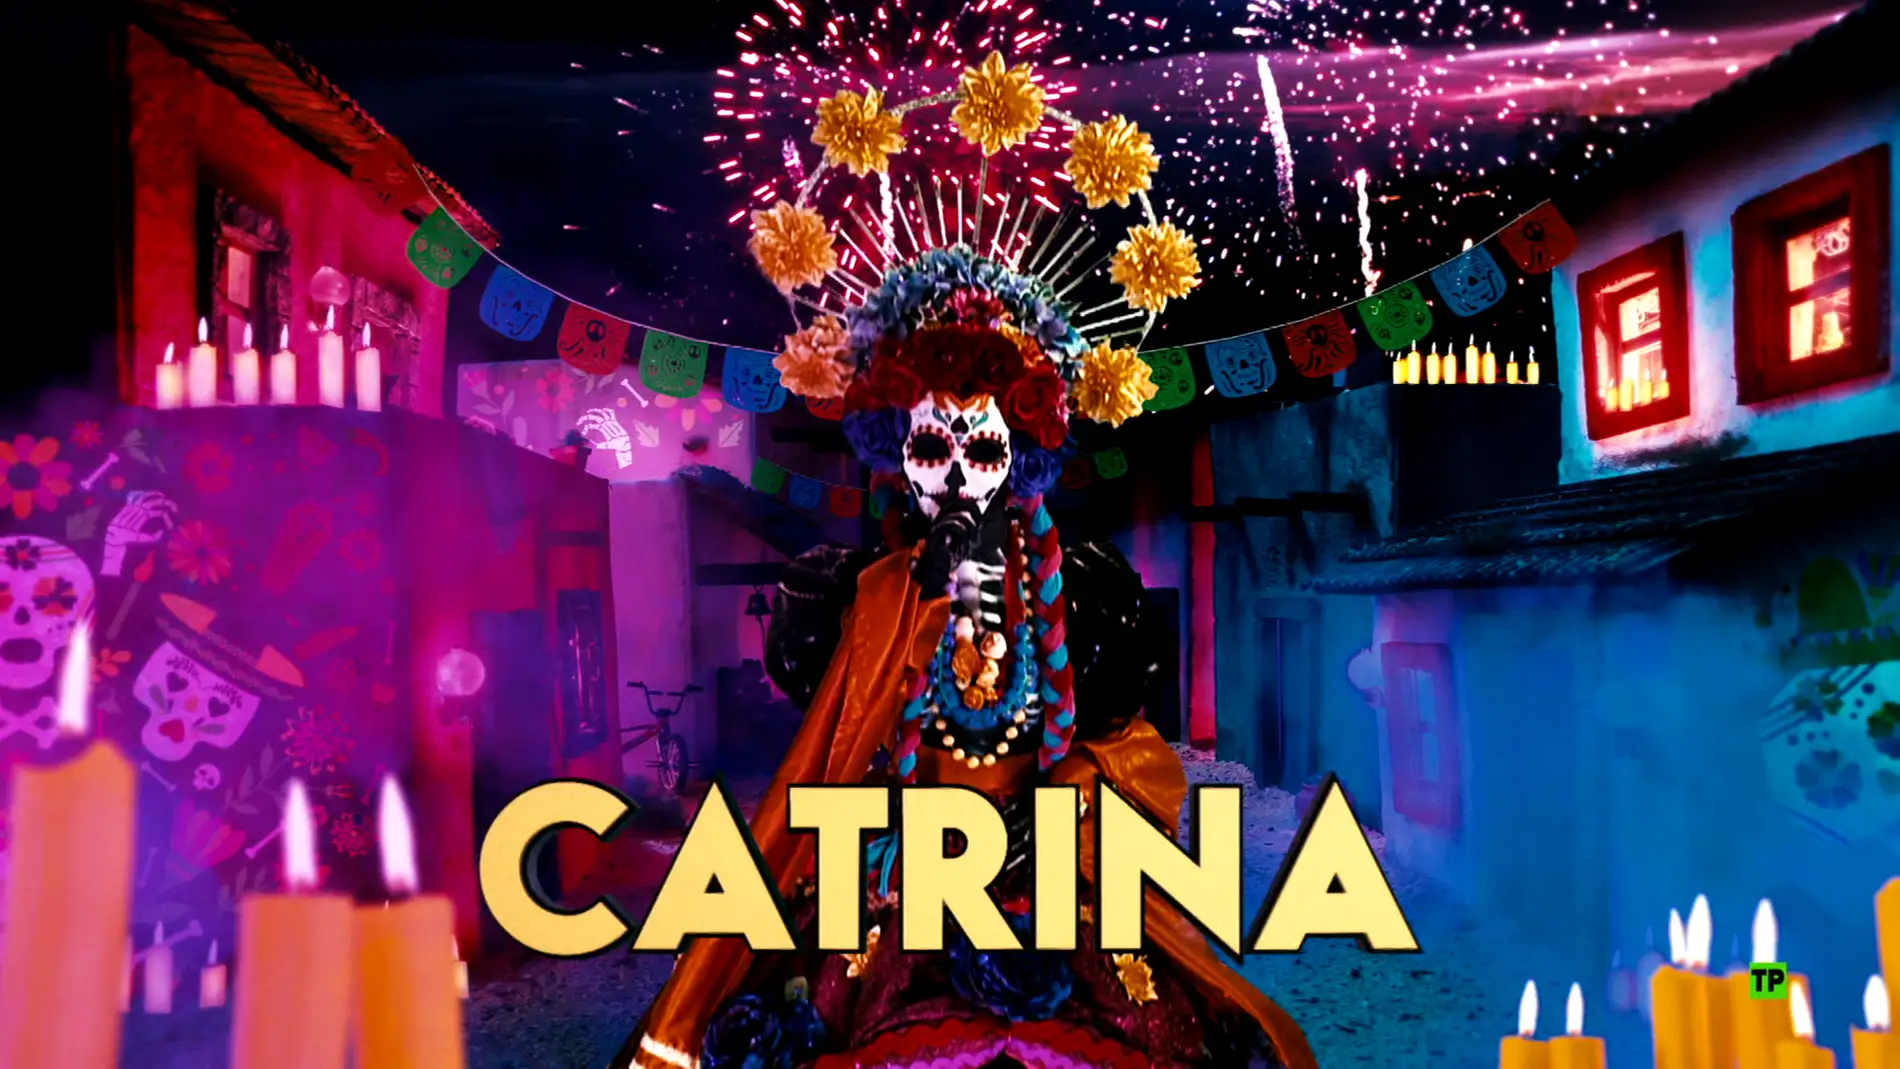 ¿Qué personaje famoso se esconde detrás de la máscara de Catrina? title=